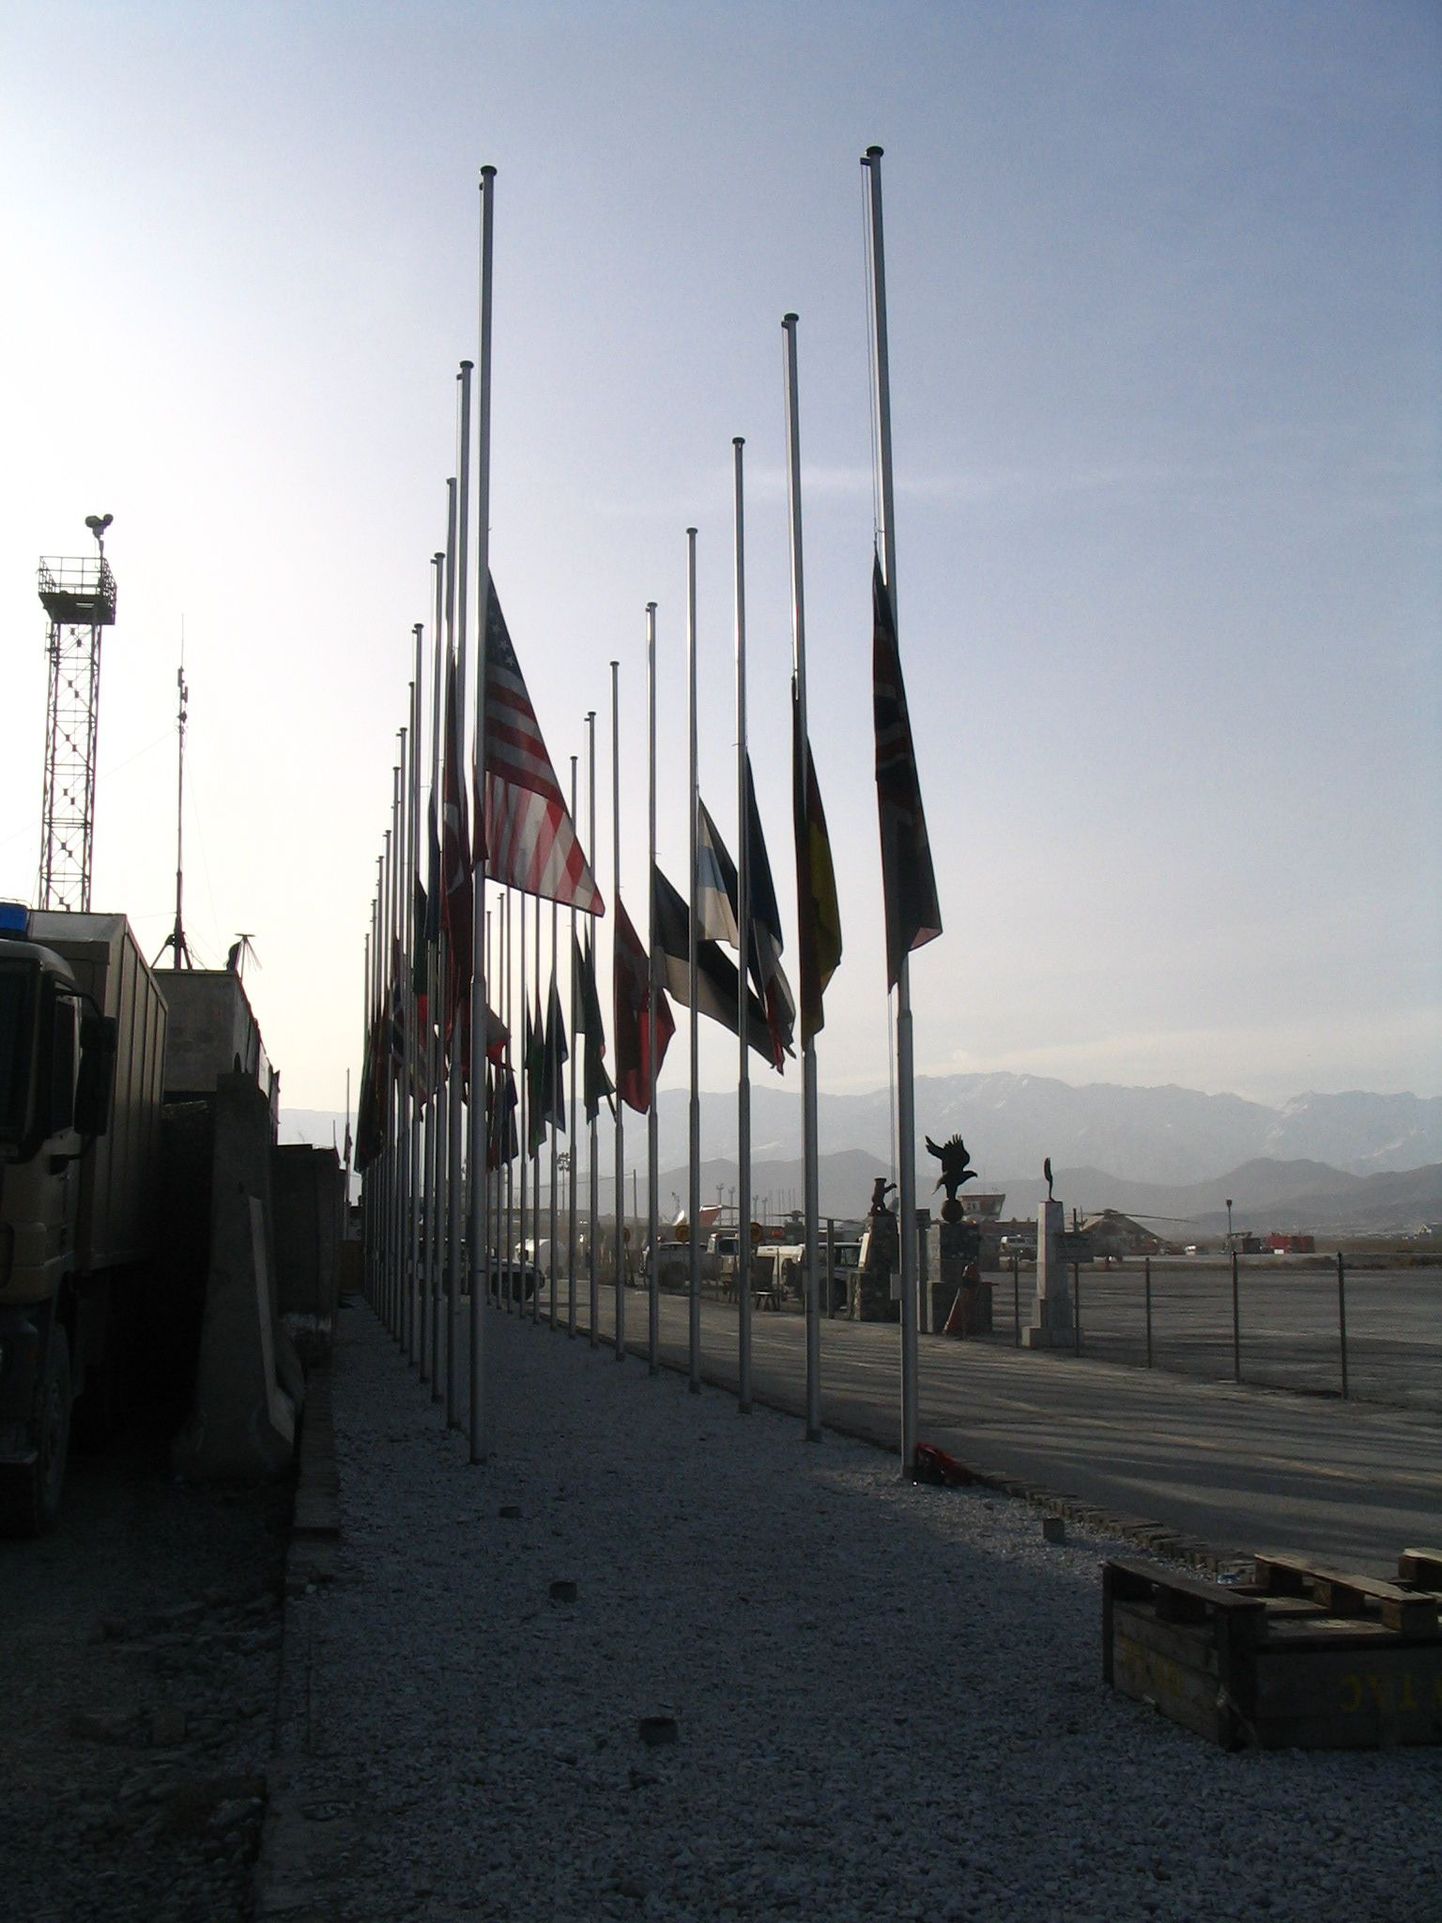 Kui mõni Rahvusvaheliste Julgeolekuabijõudude (ISAF) sõdur Afganistanis hukkub, langetatakse Kabuli rahvusvahelisel lennuväljal (KAIAl) kõigi liitlasriikide lipud poolde vardasse. Niisugune pilt avanes KAIAl nii siis, kui Paet sealt Helmandi suunas välja lendas, kui ka välisministri naasmise ajal.